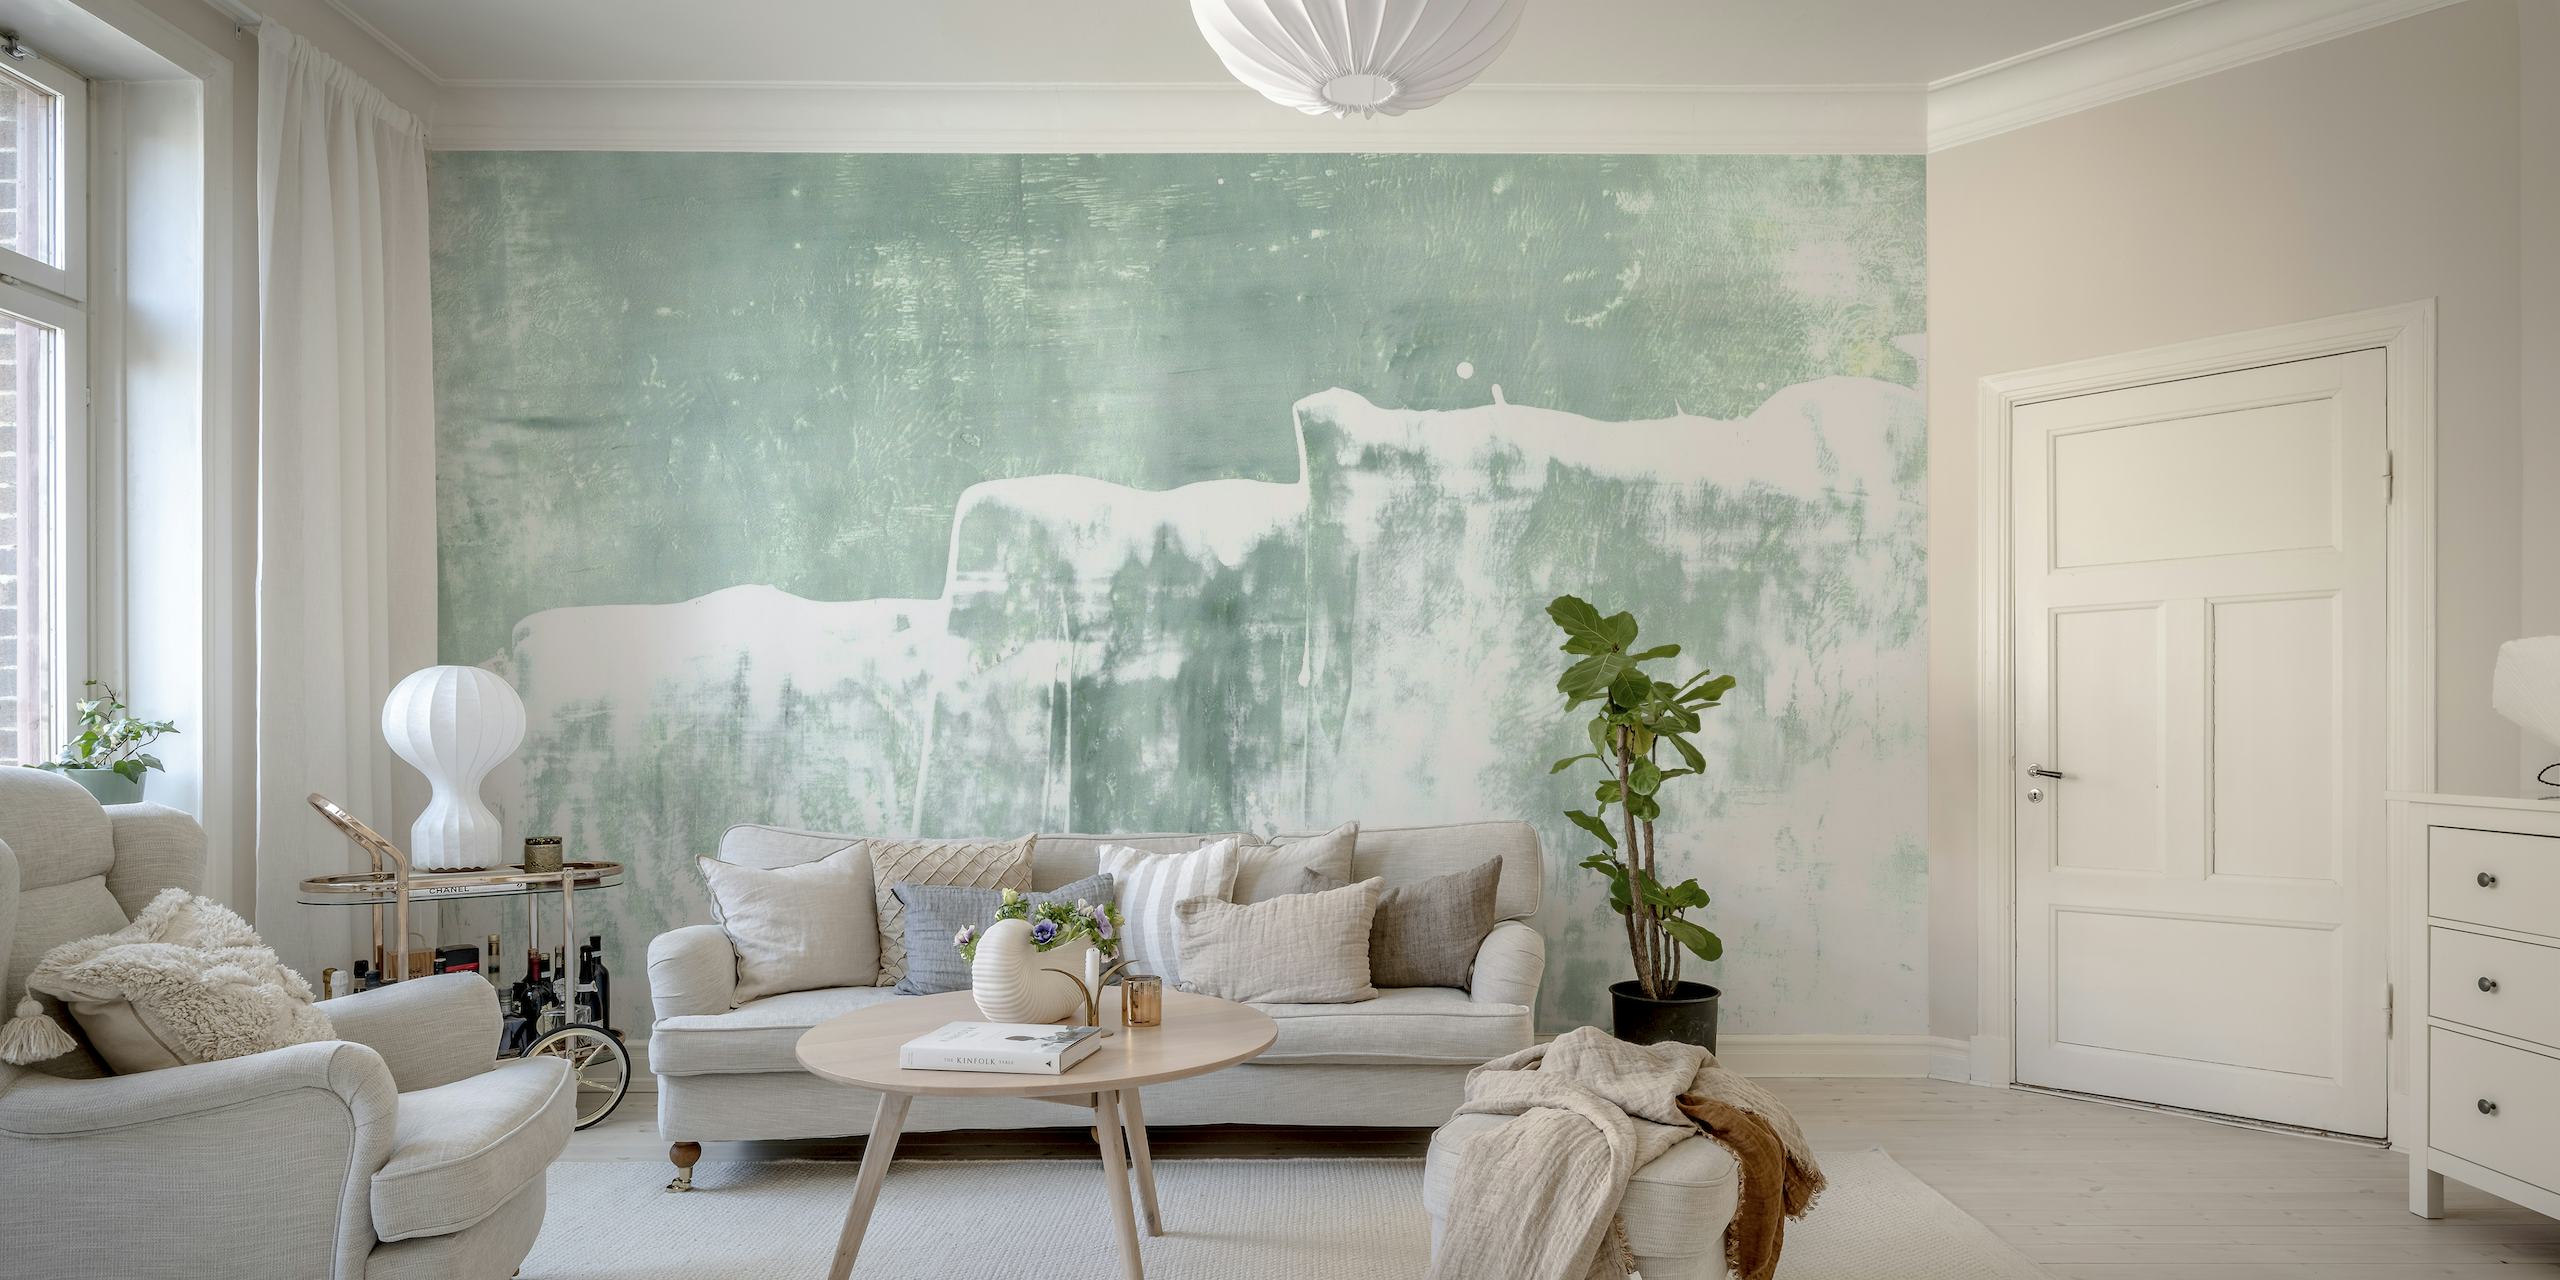 Mural de parede com pintura abstrata Mint Waves com pinceladas suaves de verde e branco